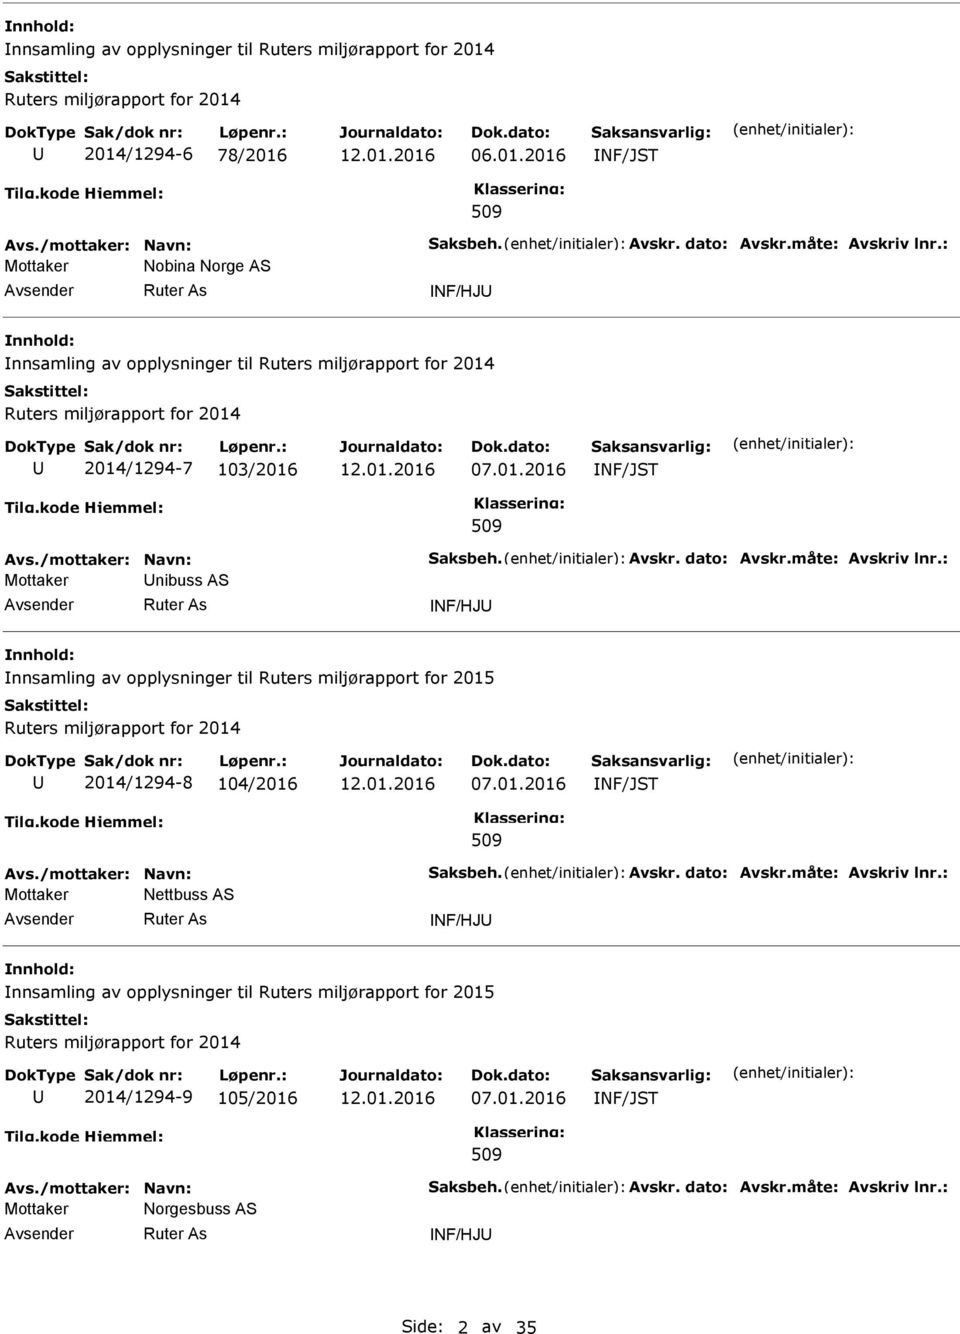 dato: Avskr.måte: Avskriv lnr.: Mottaker nibuss AS NF/HJ nnsamling av opplysninger til Ruters miljørapport for 2015 Ruters miljørapport for 2014 2014/1294-8 104/2016 07.01.2016 NF/JST 509 Avs.